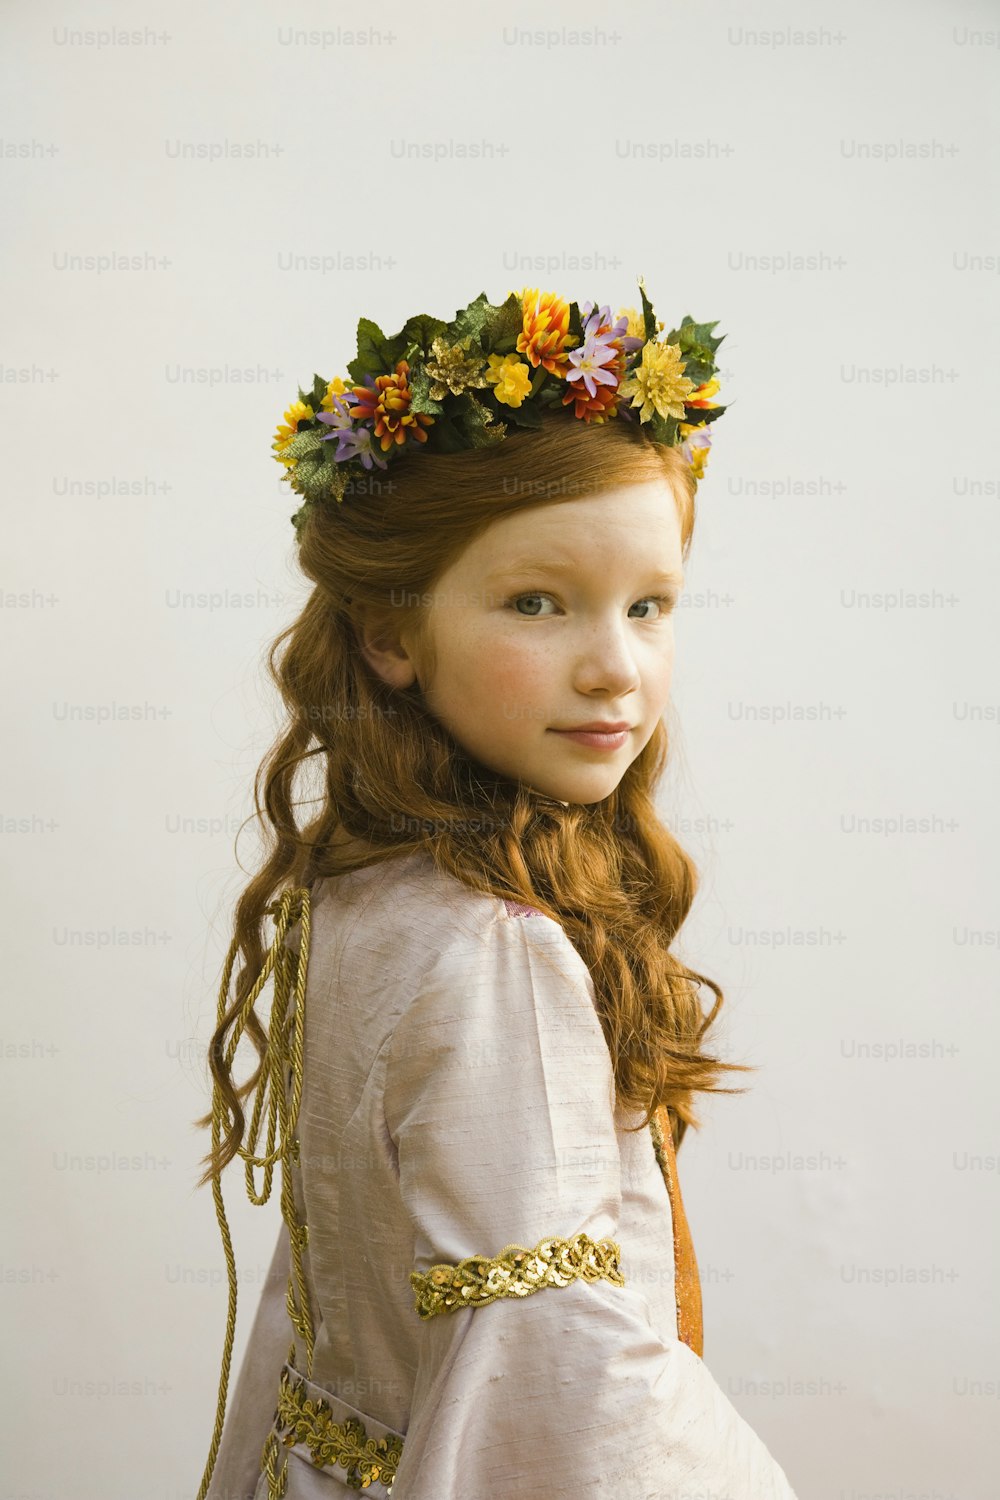 Une petite fille avec une couronne de fleurs sur la tête